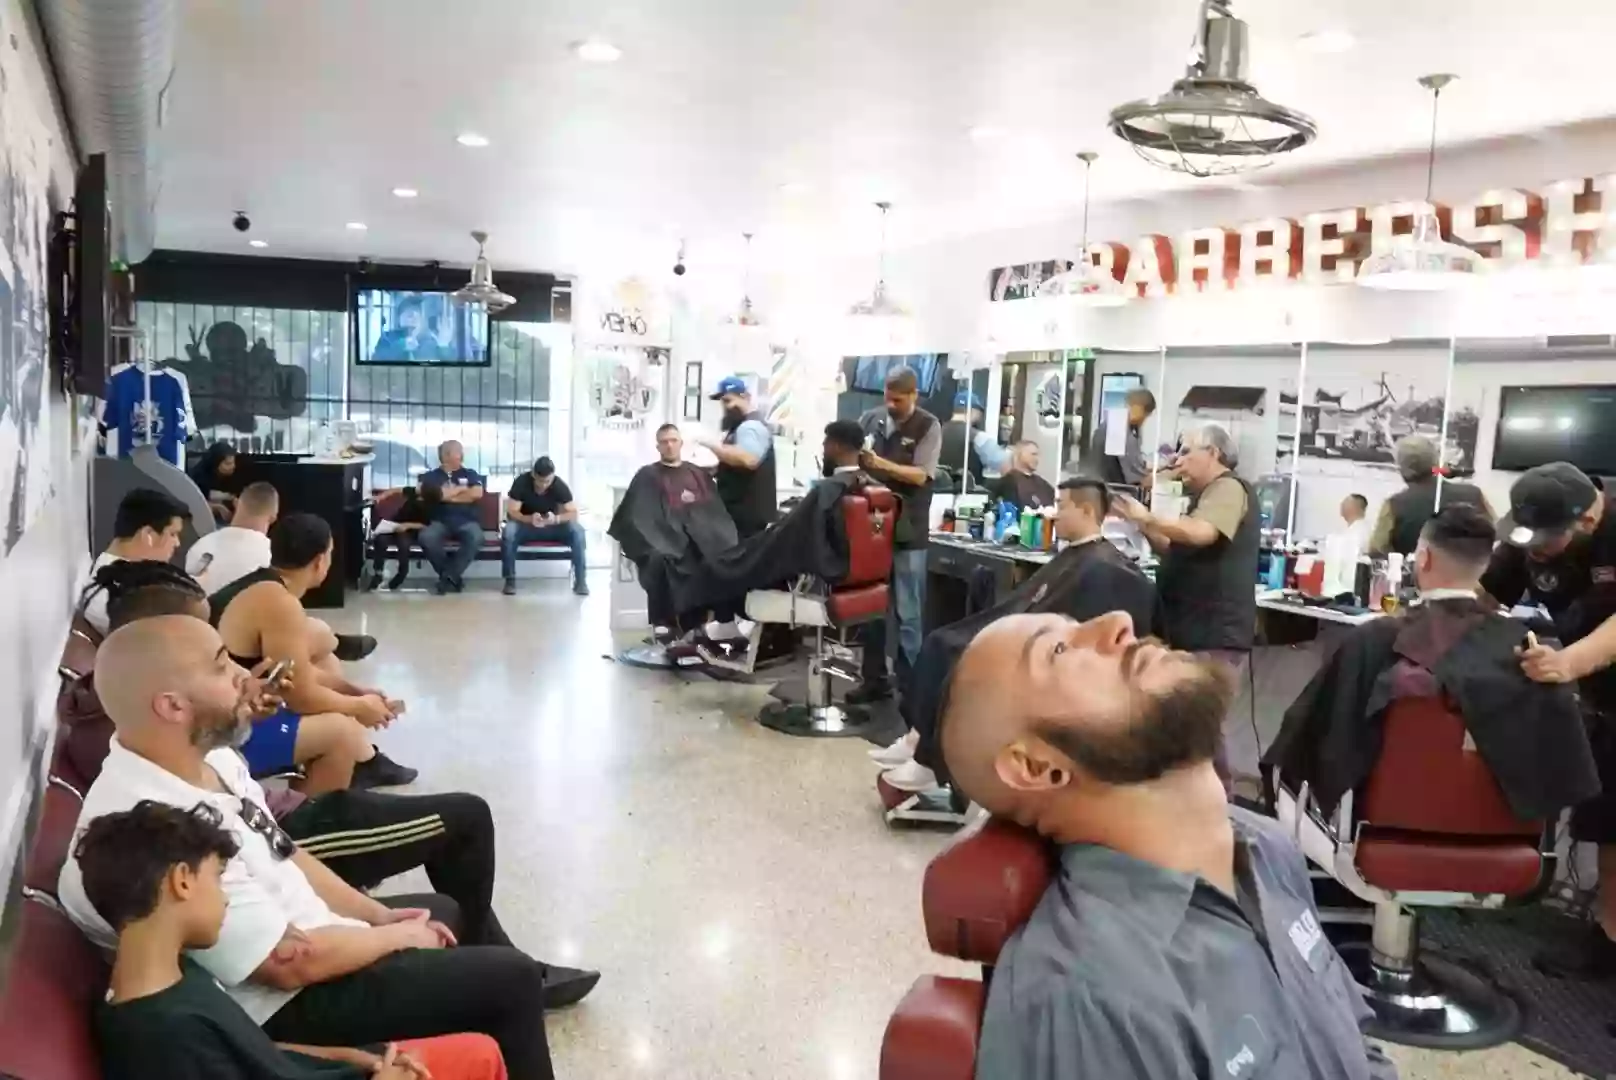 VIP Barber Shop